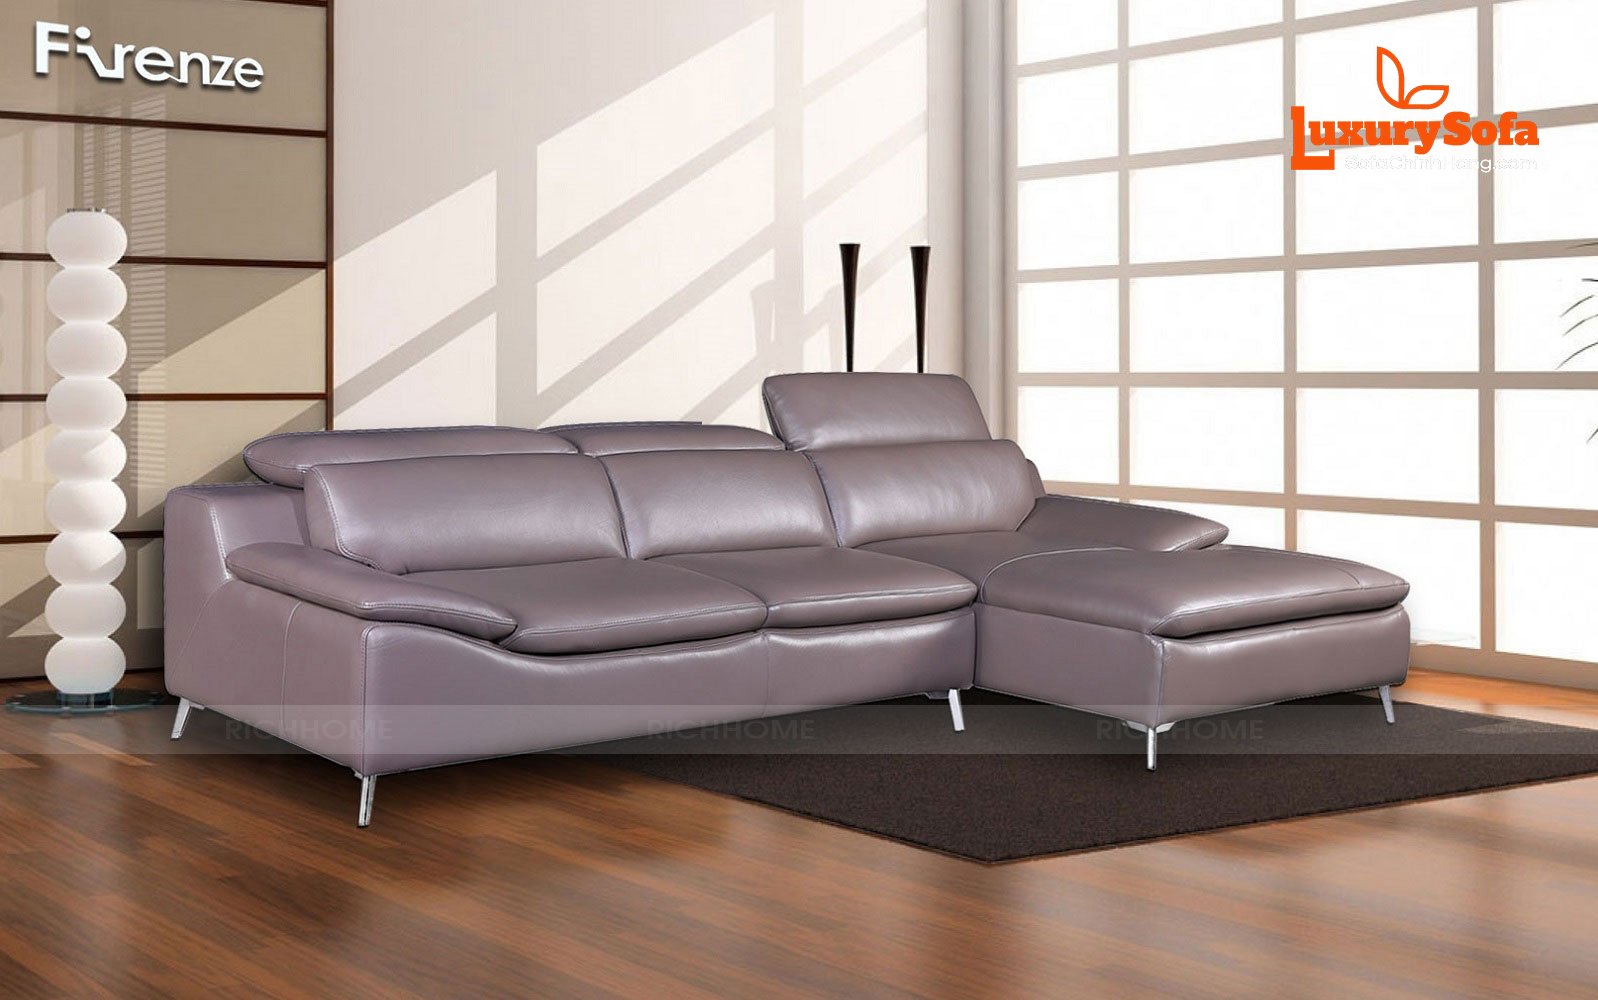 6 mẫu bàn ghế sofa góc nhập khẩu bán chạy nhất hiện nay